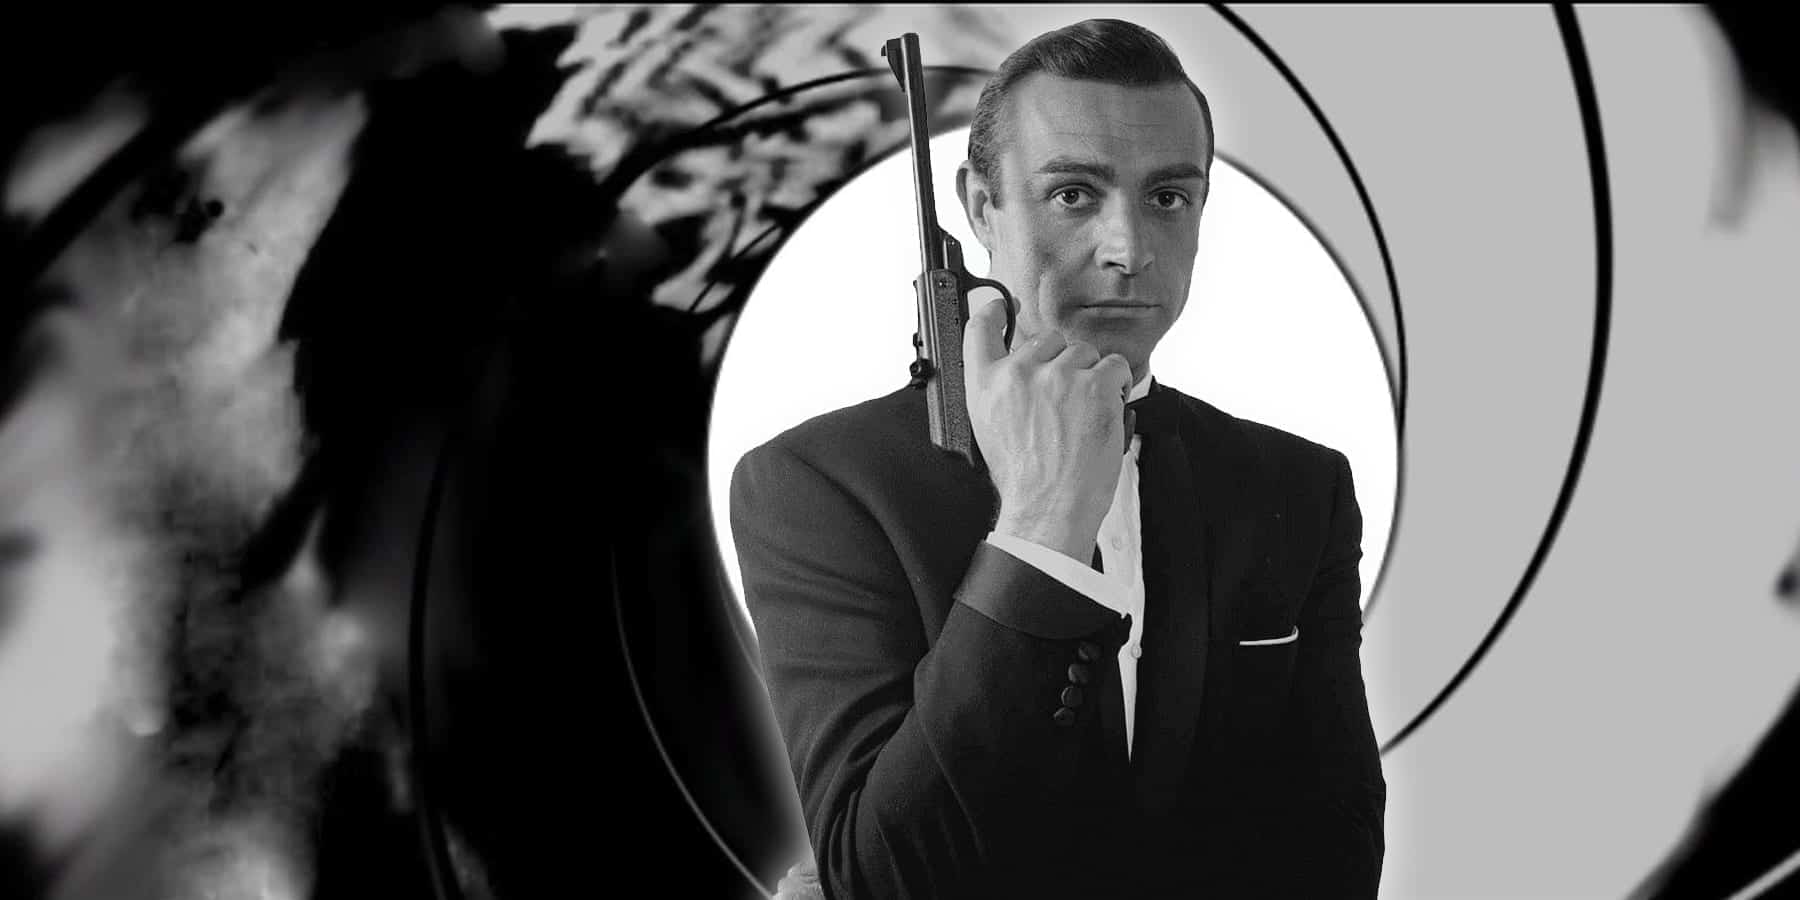 Sean Connery as James Bond 007